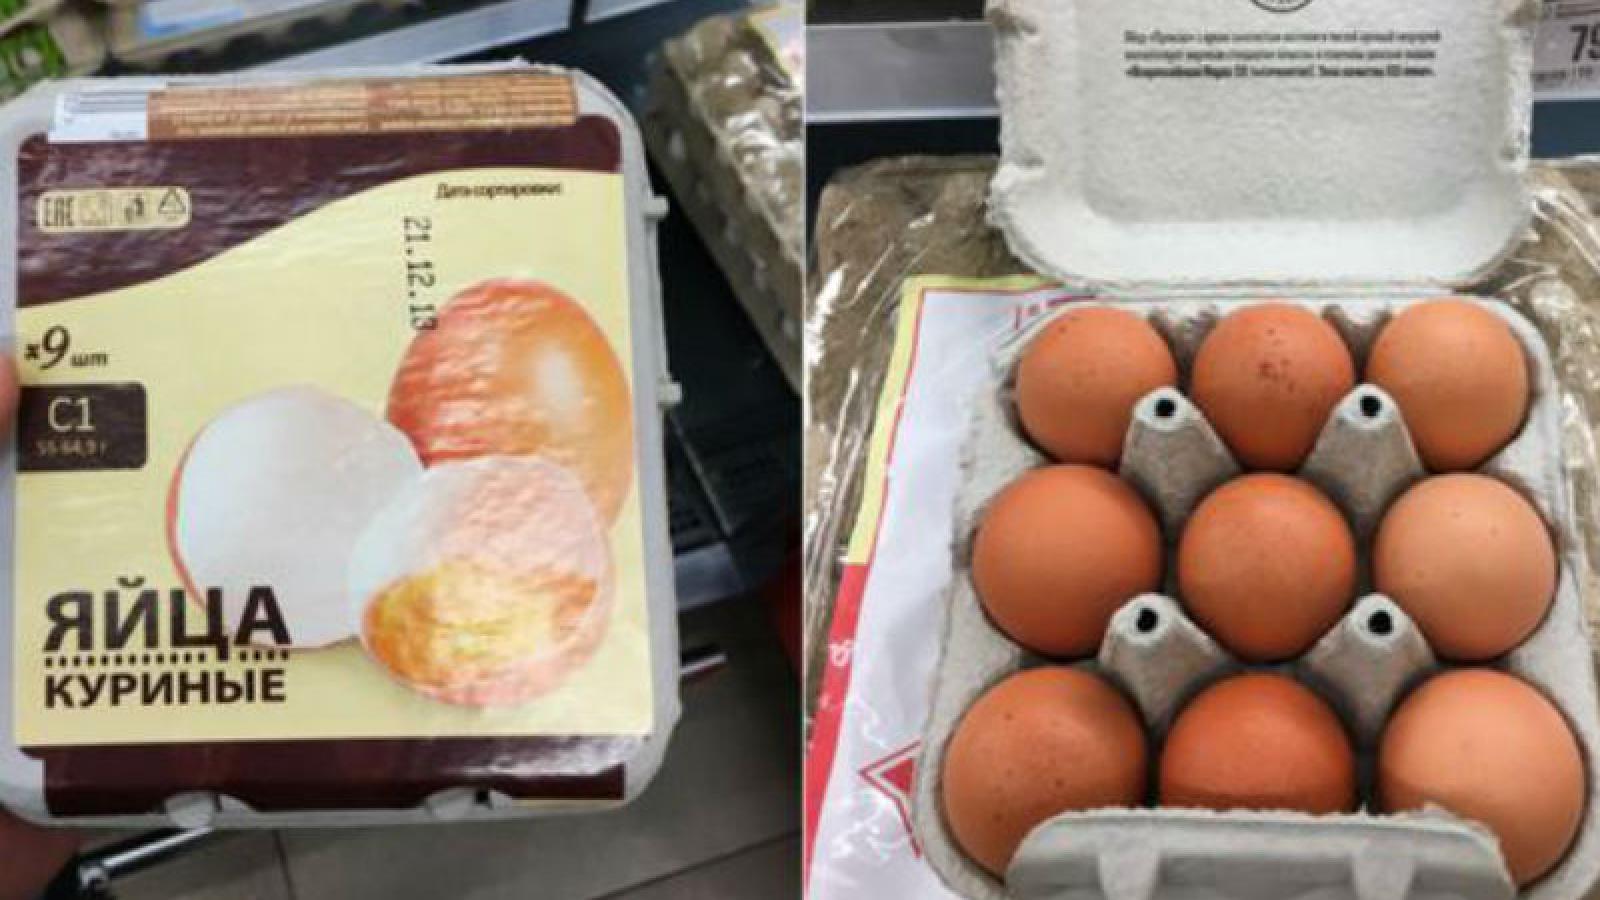 «Девяток»: в России начали продавать яйца в упаковках по 9 штук